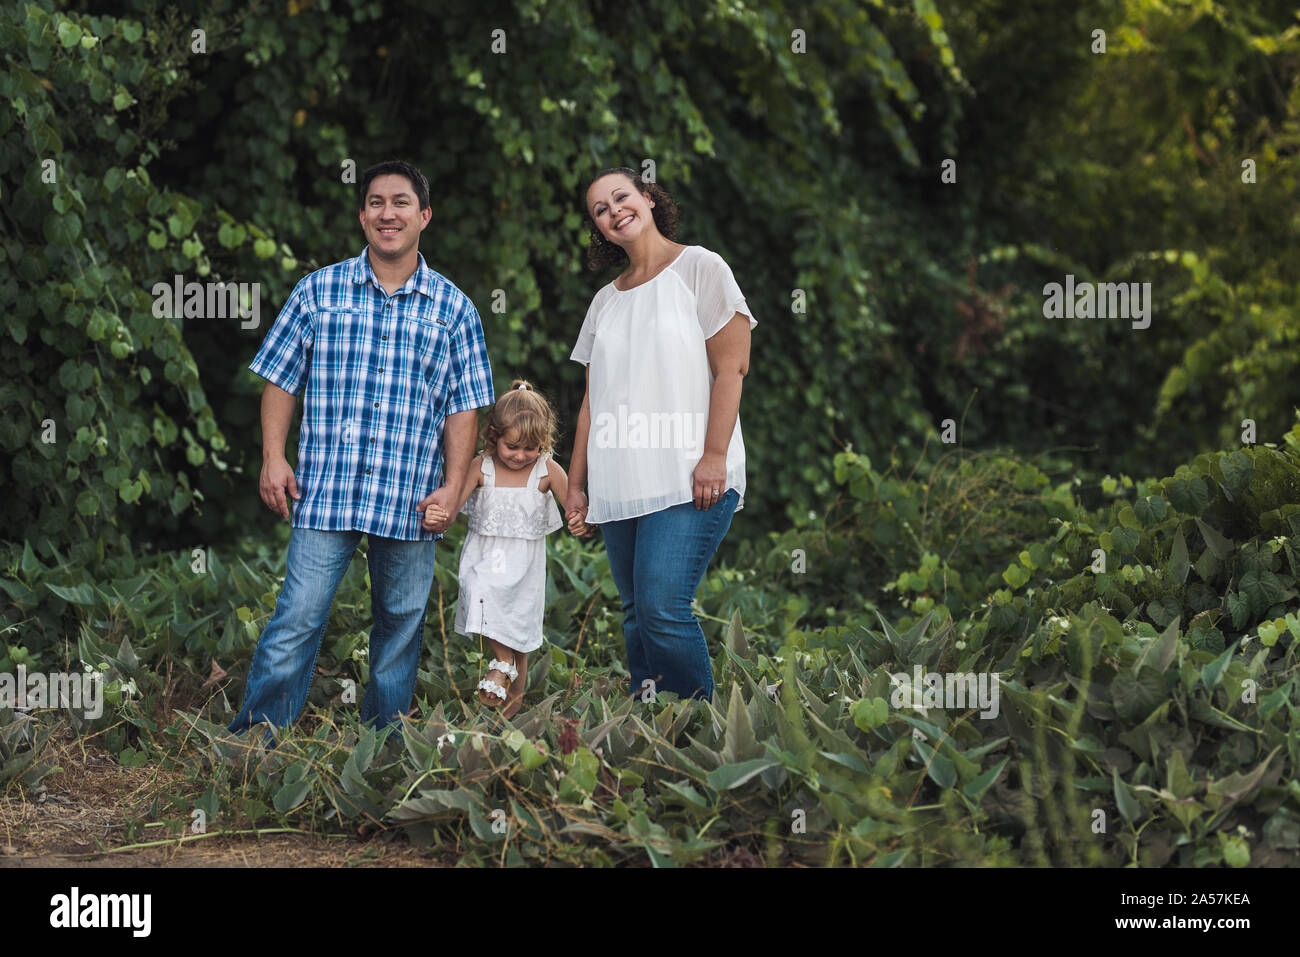 Lächelnd Mama, Papa und 4 Jahre alte Tochter halten sich an den Händen in einem grünen Feld Stockfoto